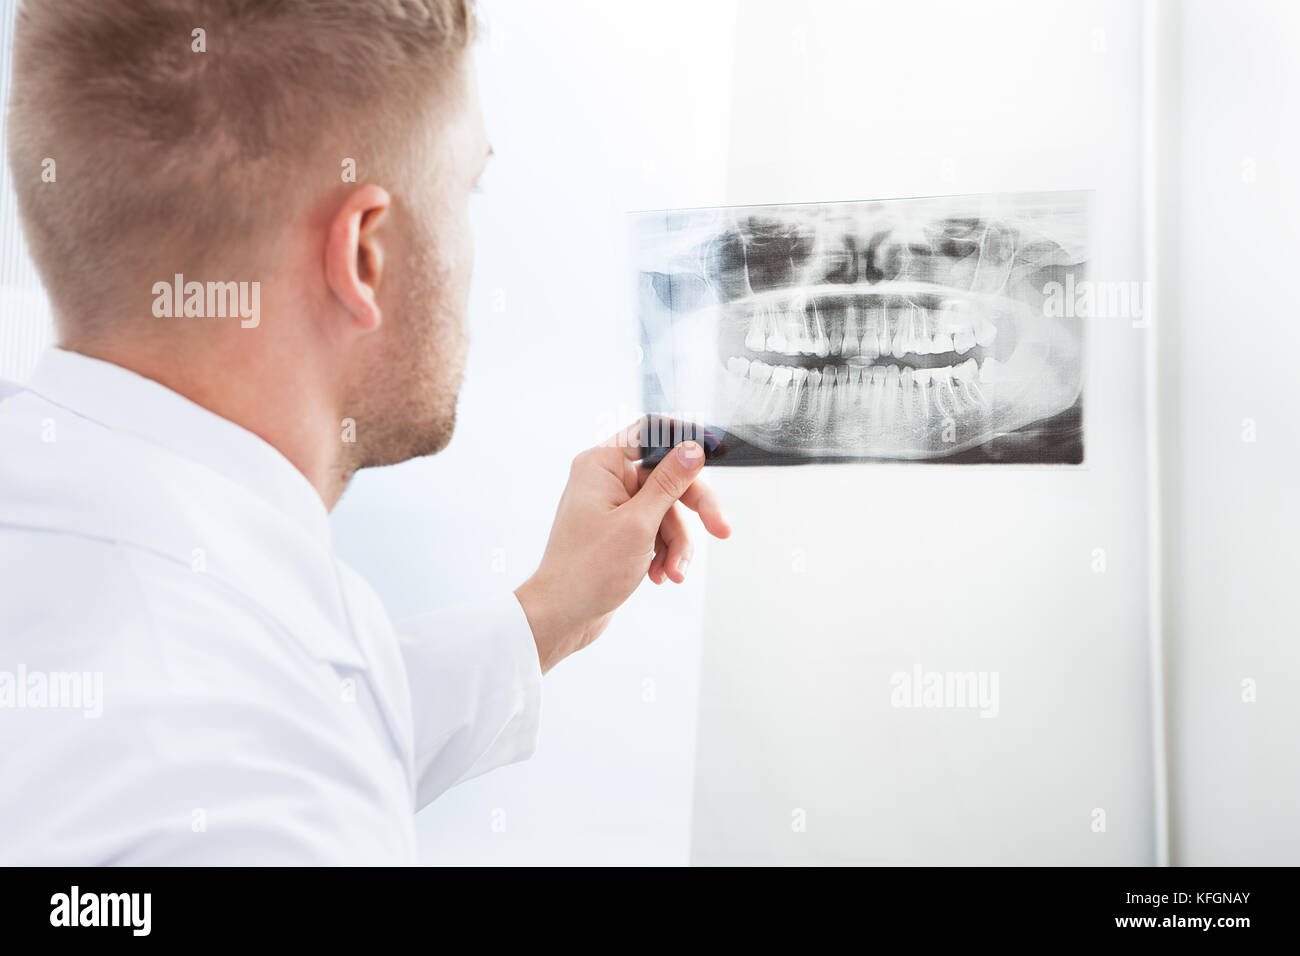 Arzt Studium eine x-ray film halten Sie es gegen das Licht, wie er seine Diagnose oder Schecks auf den Fortschritt der Behandlung macht Stockfoto